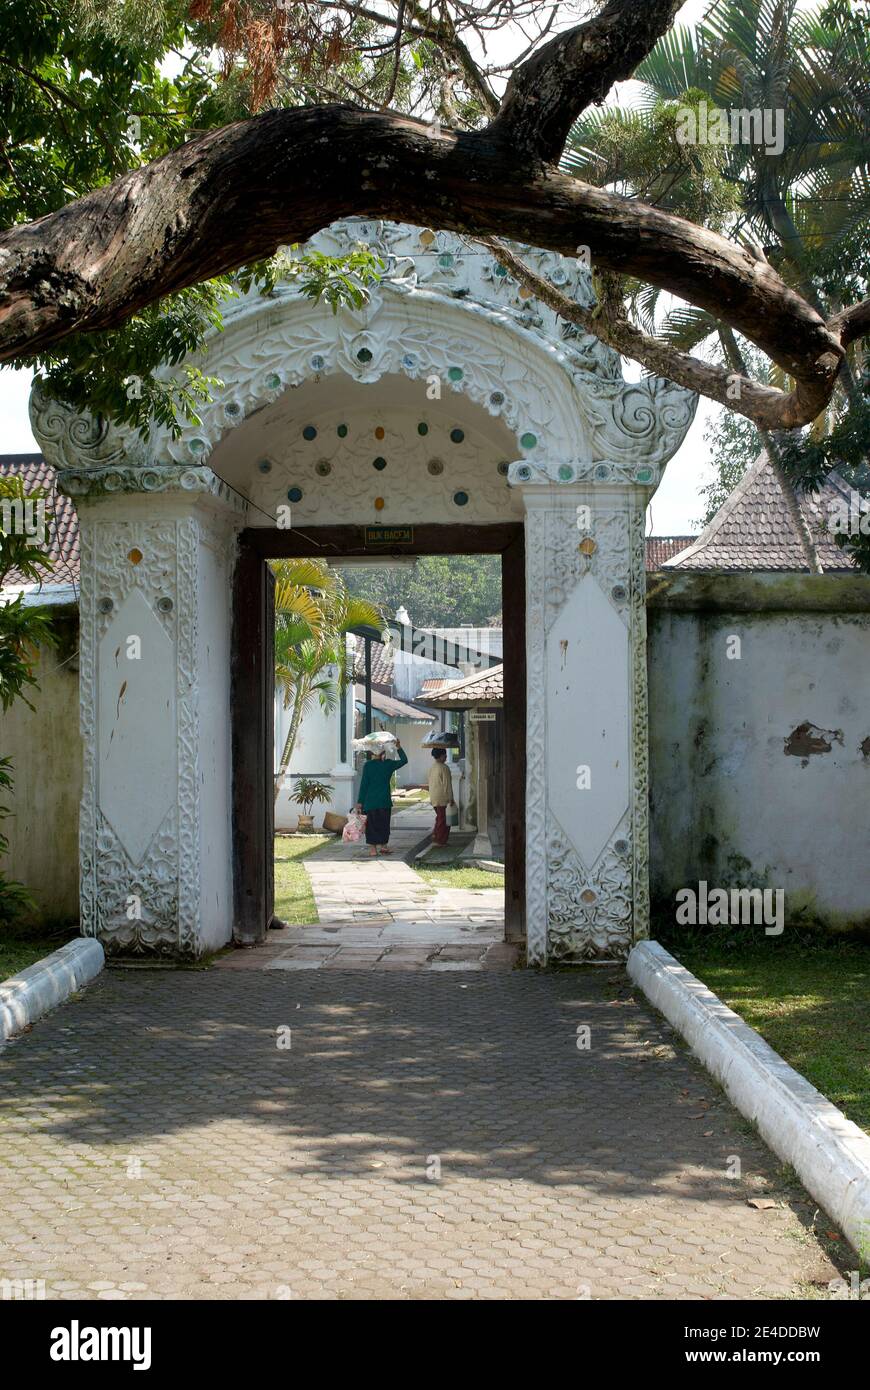 Una delle porte del palazzo di Kasepuhan Cirebon con uno stile architettonico europeo intagliato. All'interno c'erano due venditori di cibo tradizionali Foto Stock